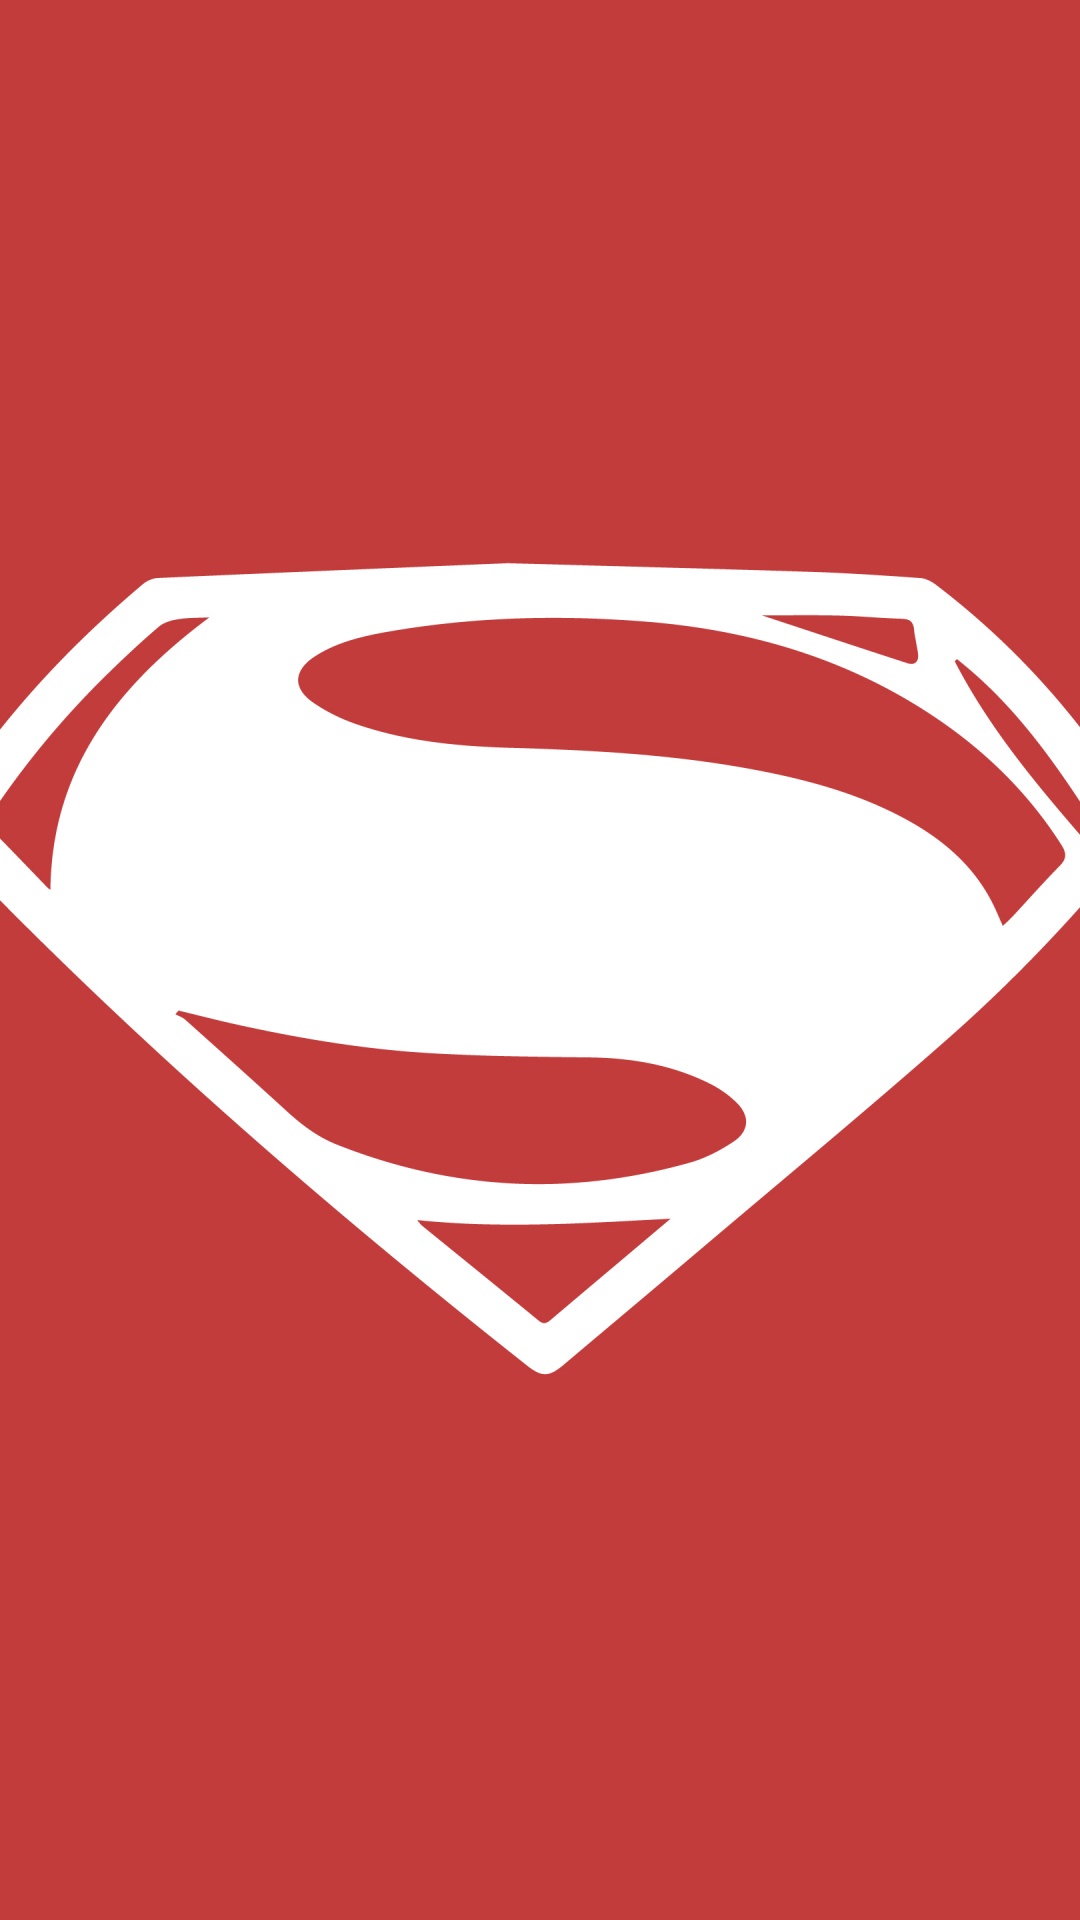 超人的标志, 红色的, 心脏, Dc漫画, 超级英雄 壁纸 1080x1920 允许